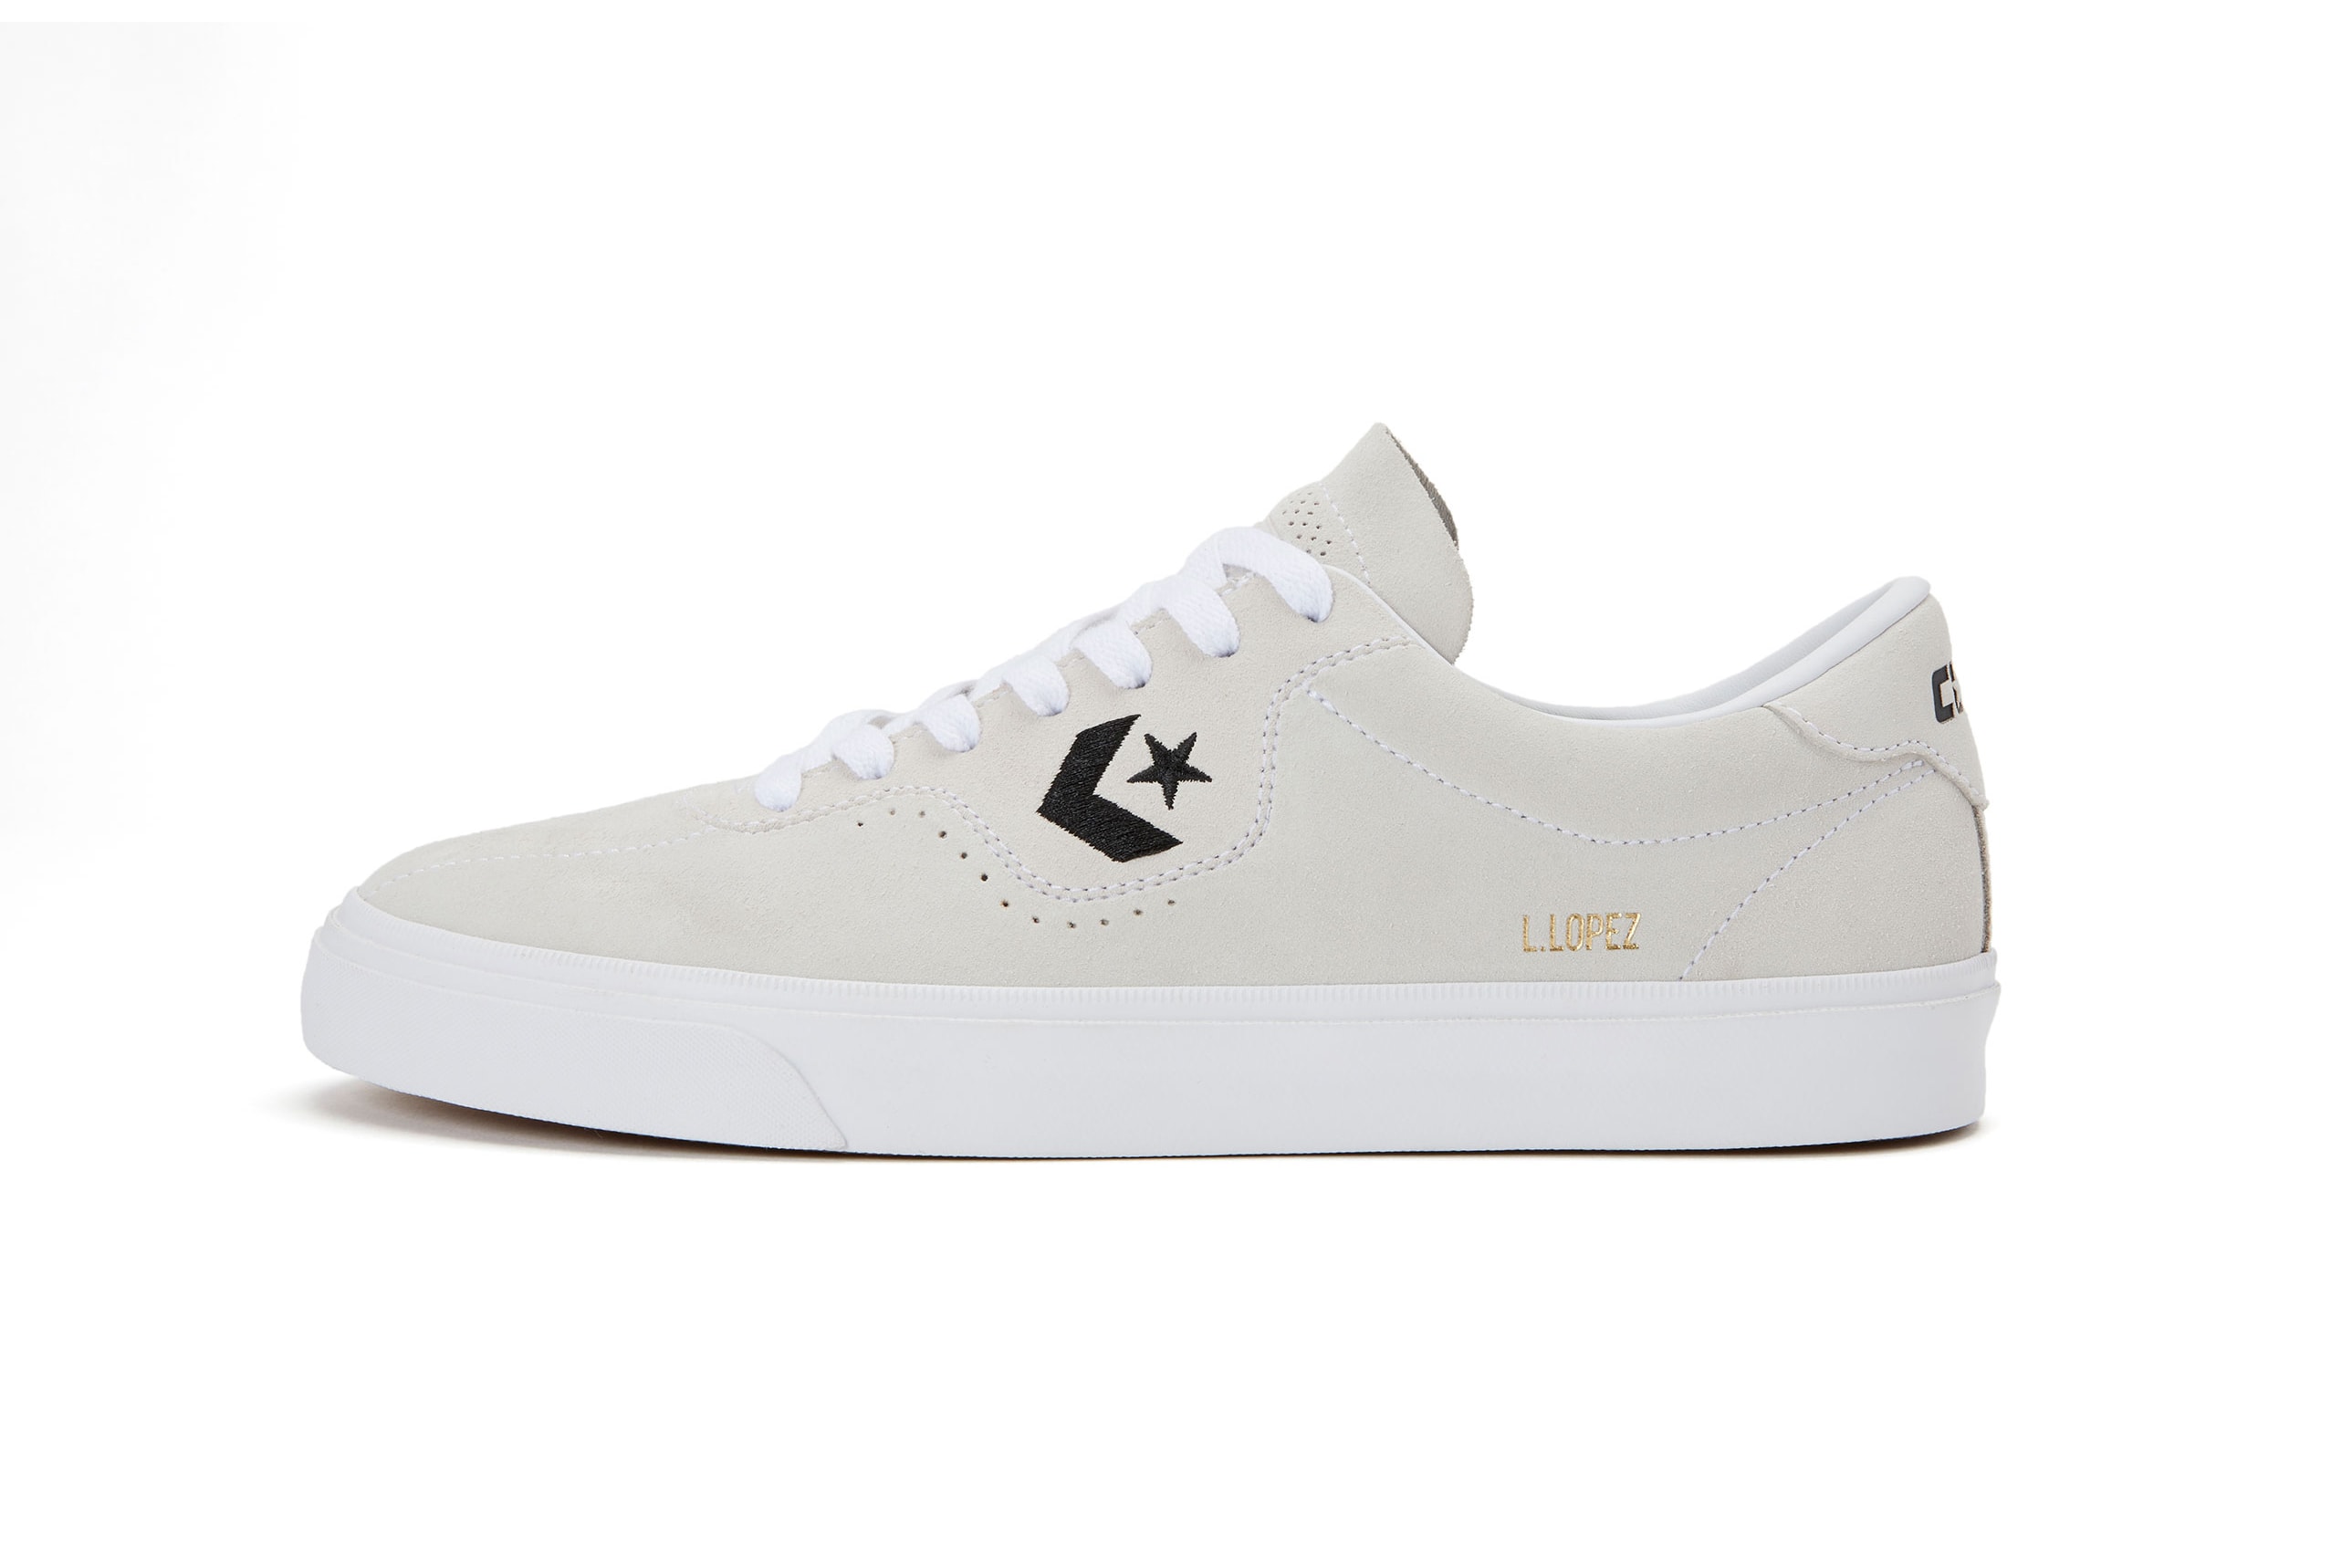 Converse Unveils the Louie Lopez Pro Skate Shoe